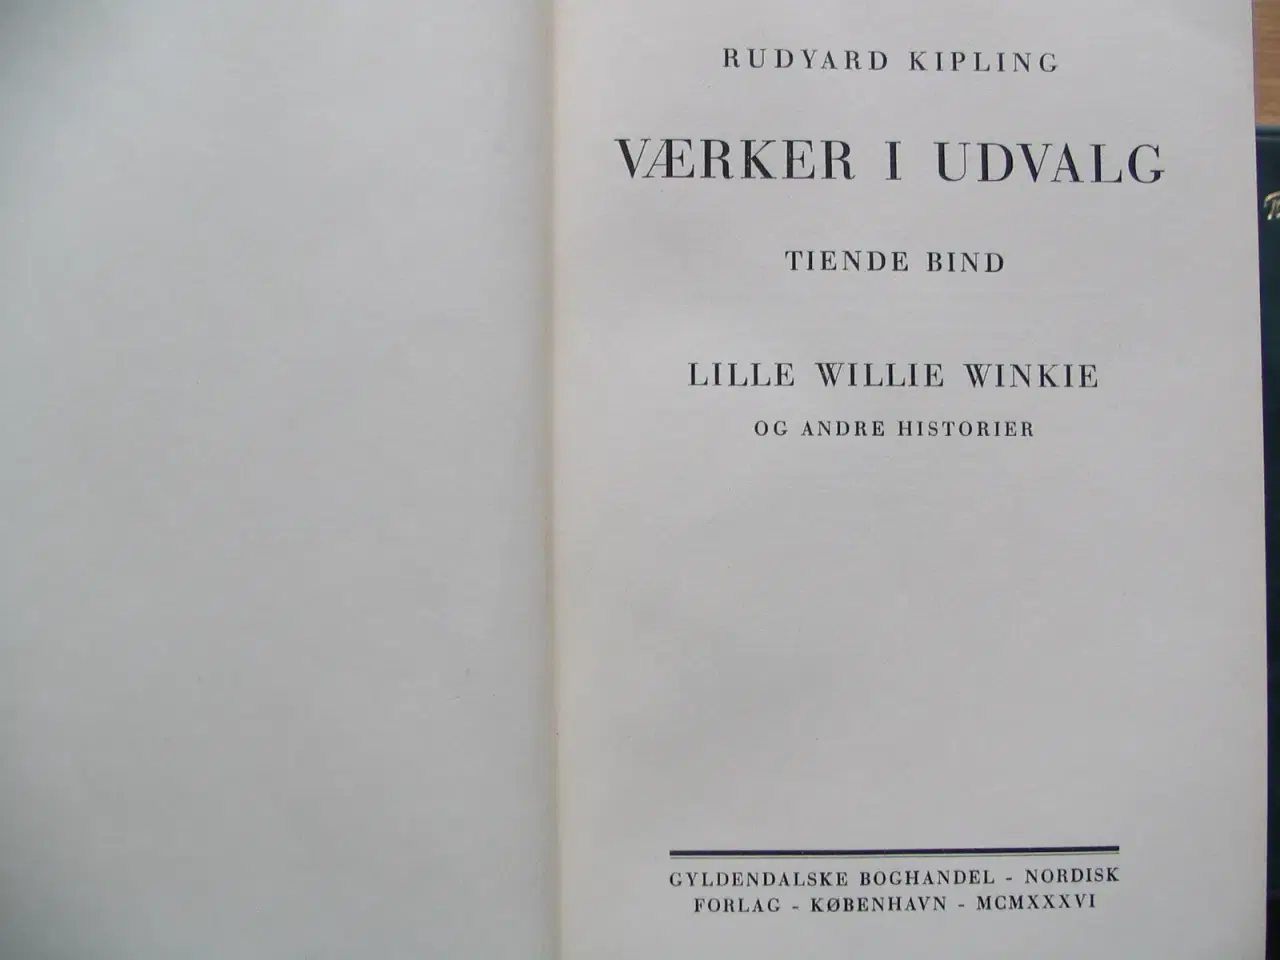 Billede 8 - Kipling (1865-1936). Værker i udvalg i 12 bind